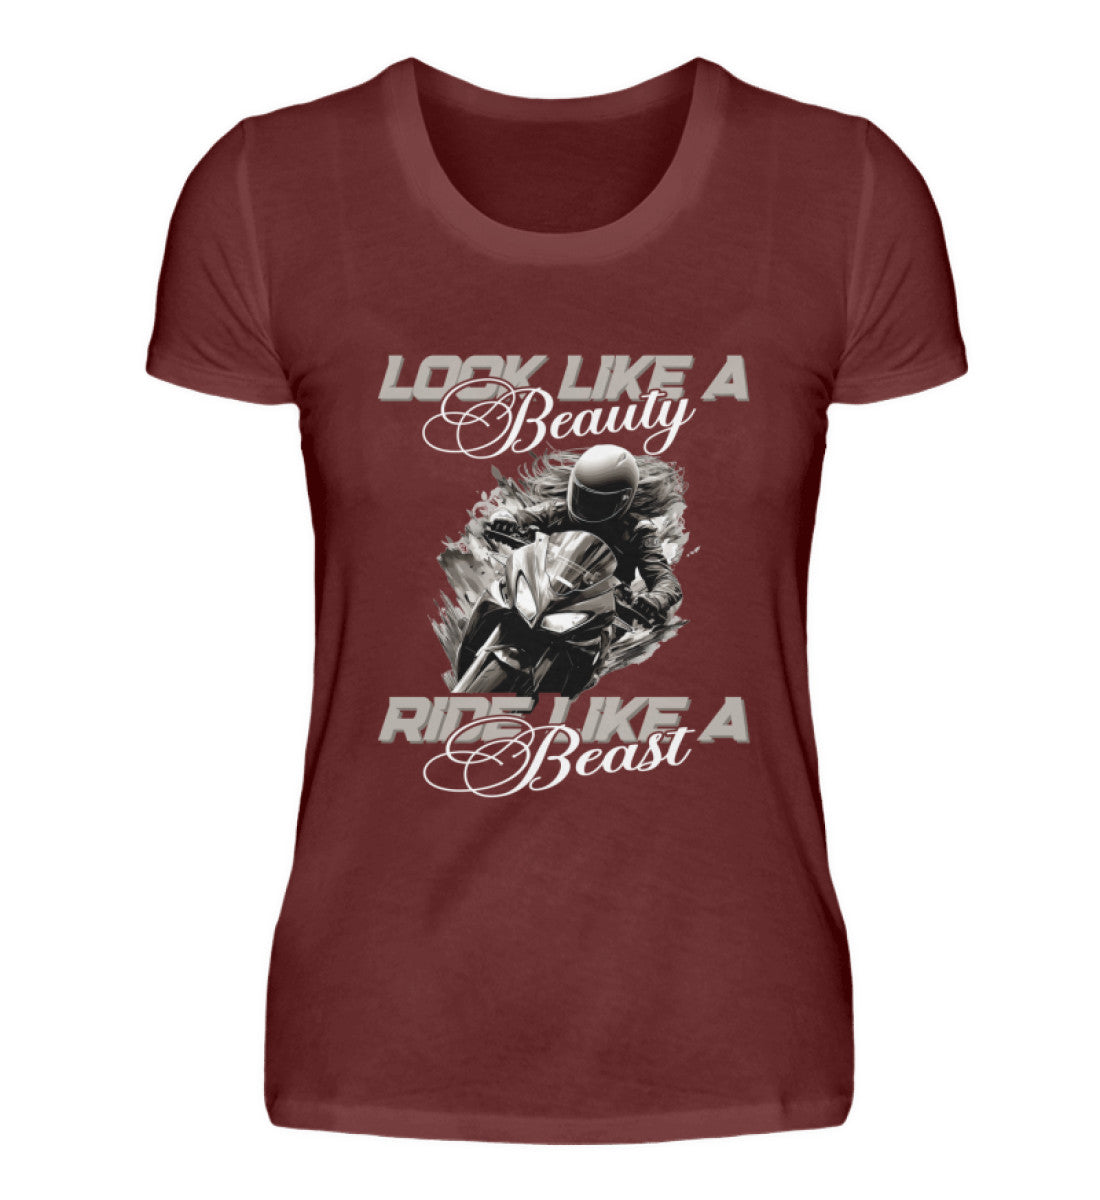 Ein Damen T-Shirt für Motorradfahrerinnen von Wingbikers mit dem Aufdruck, Look like a Beauty - Ride like a Beast, in weinrot.